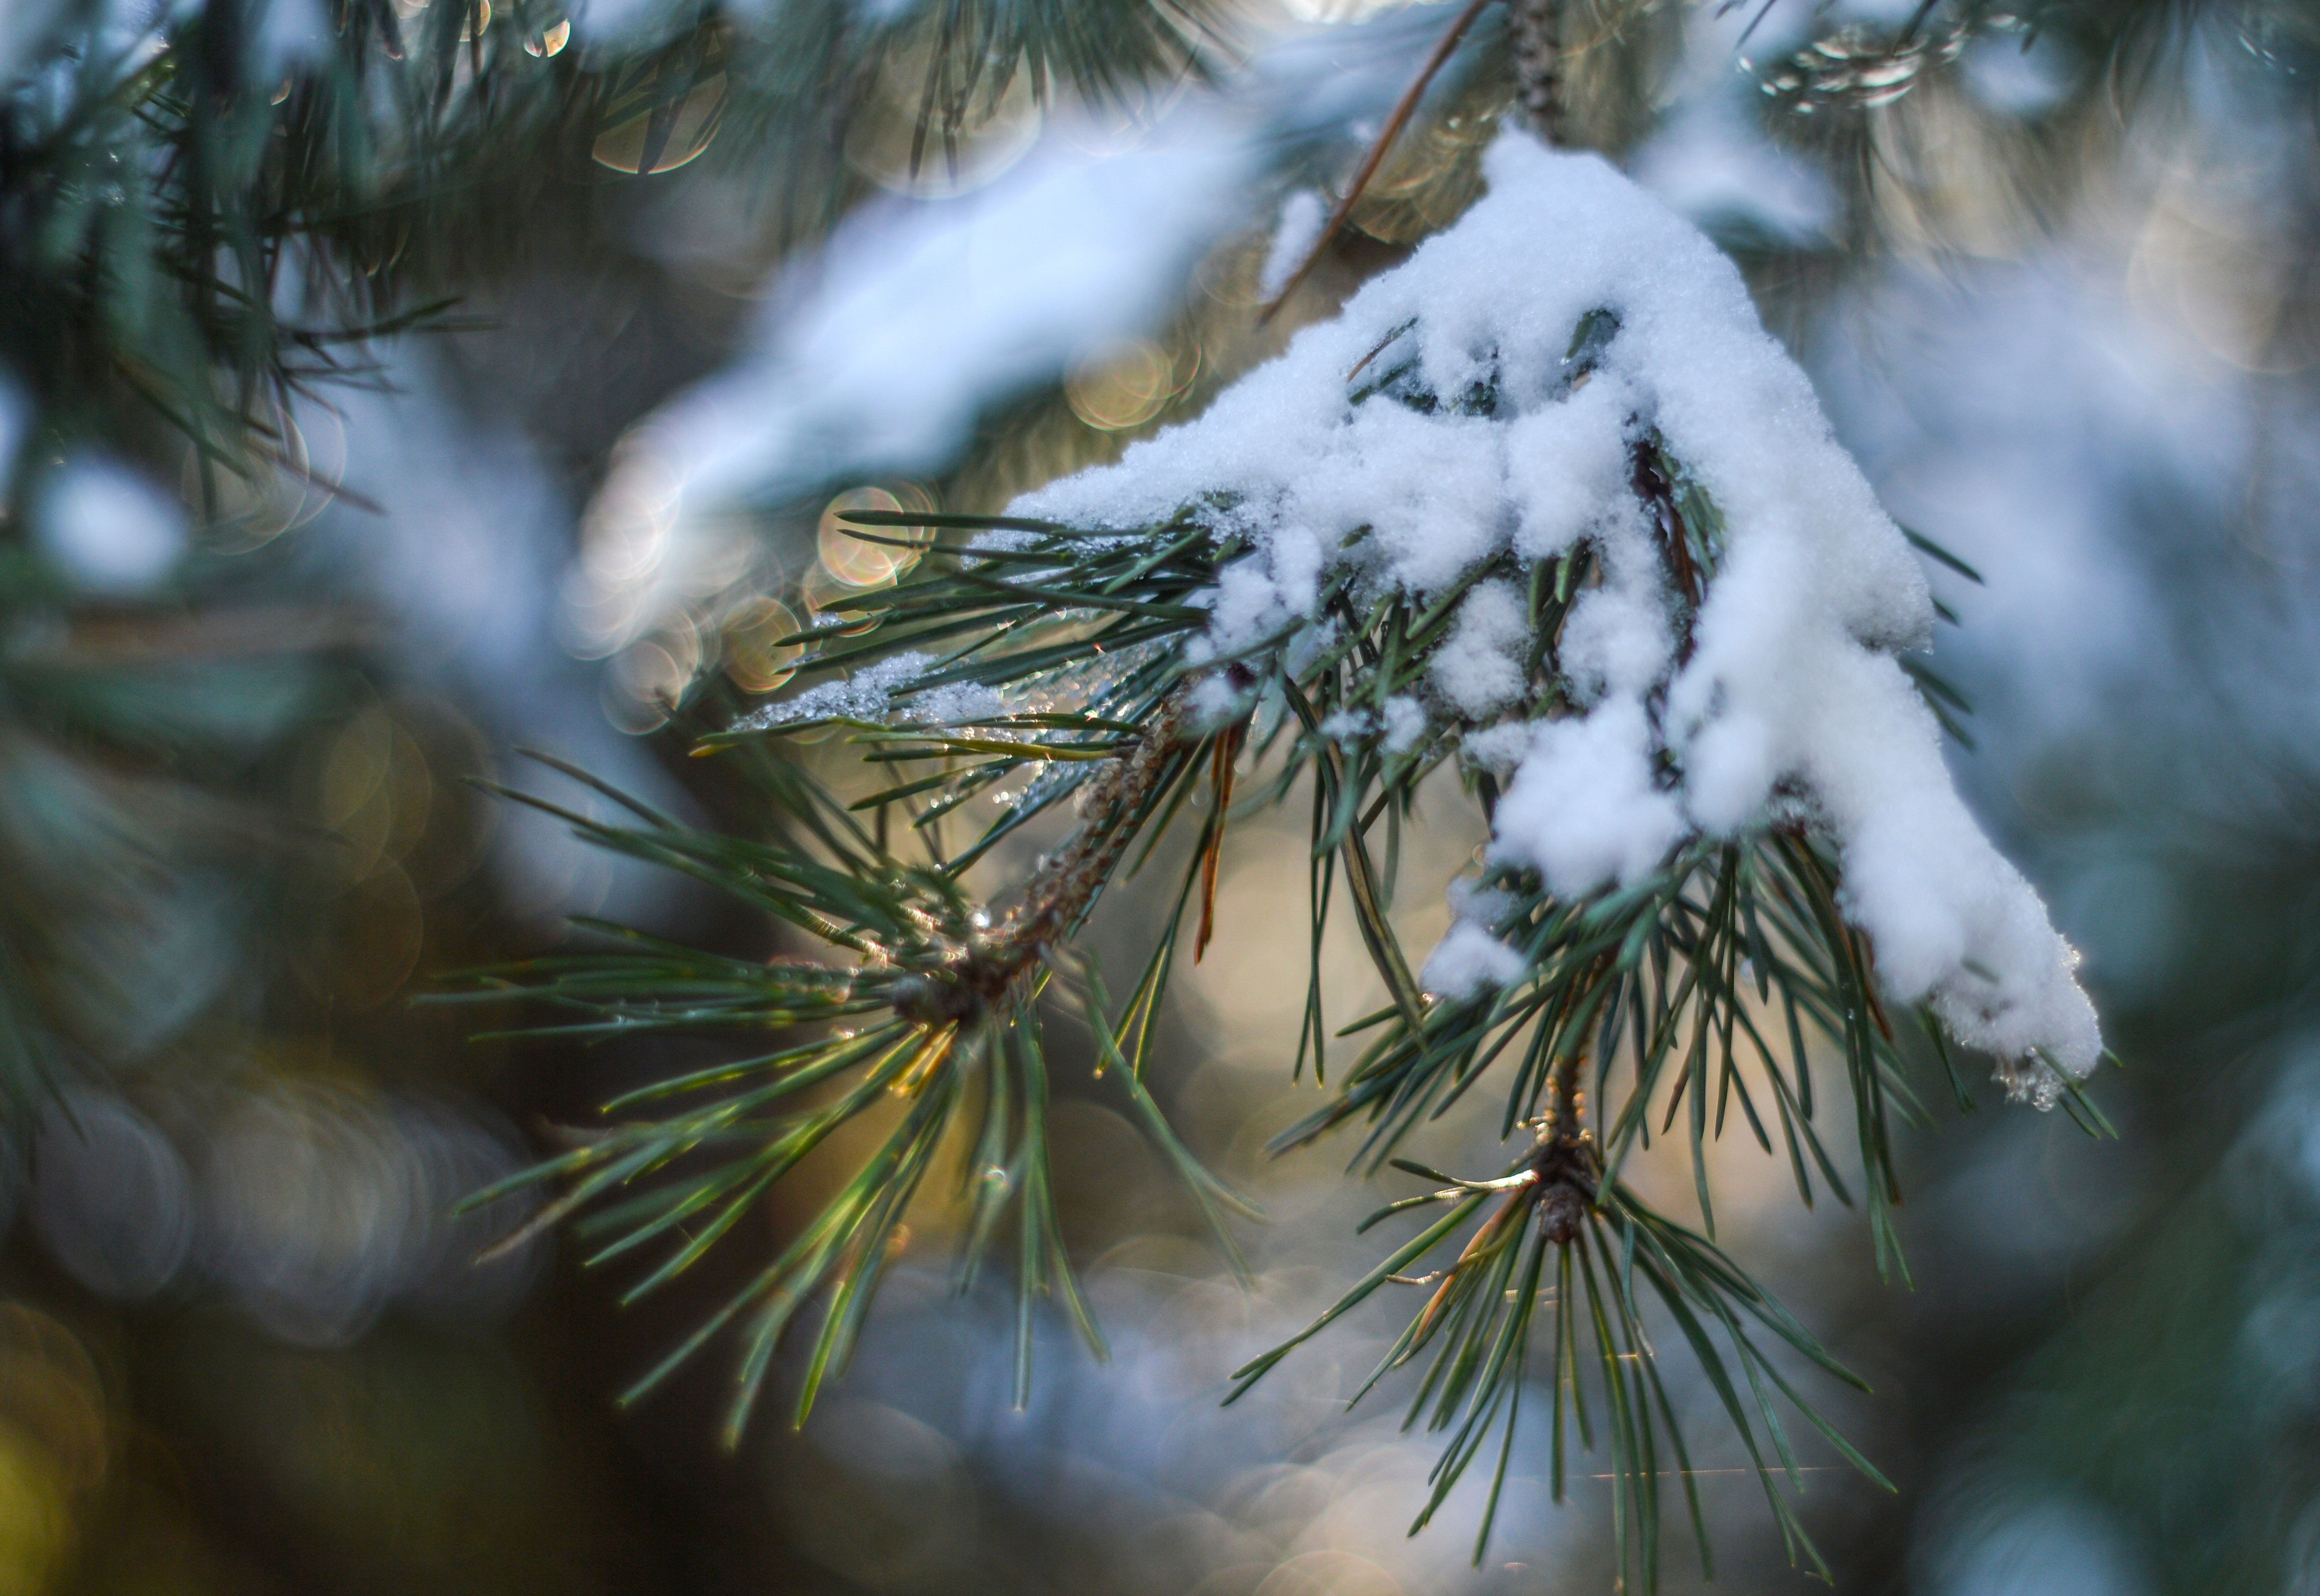 Хвойные в снегу. Хвойные деревья в снегу. Сосновые ветки в снегу. Хвоя сосны зимой. Заснеженные ветки сосны.